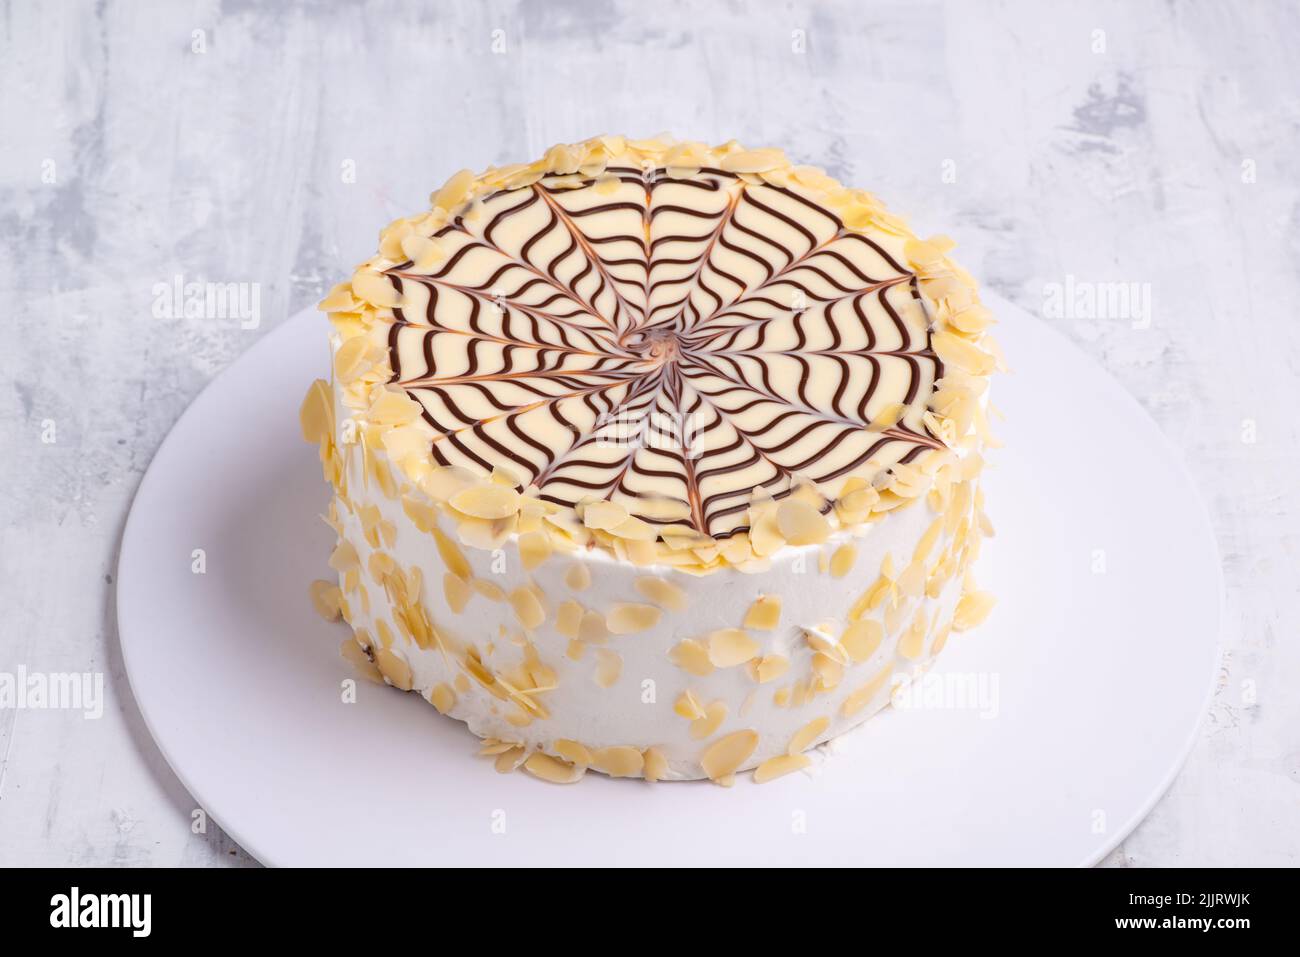 Un gâteau fait avec des couches de pâte feuilletée remplie de crème fraîche et d'araignée au chocolat sur une plaque blanche sur une surface en marbre blanc Banque D'Images